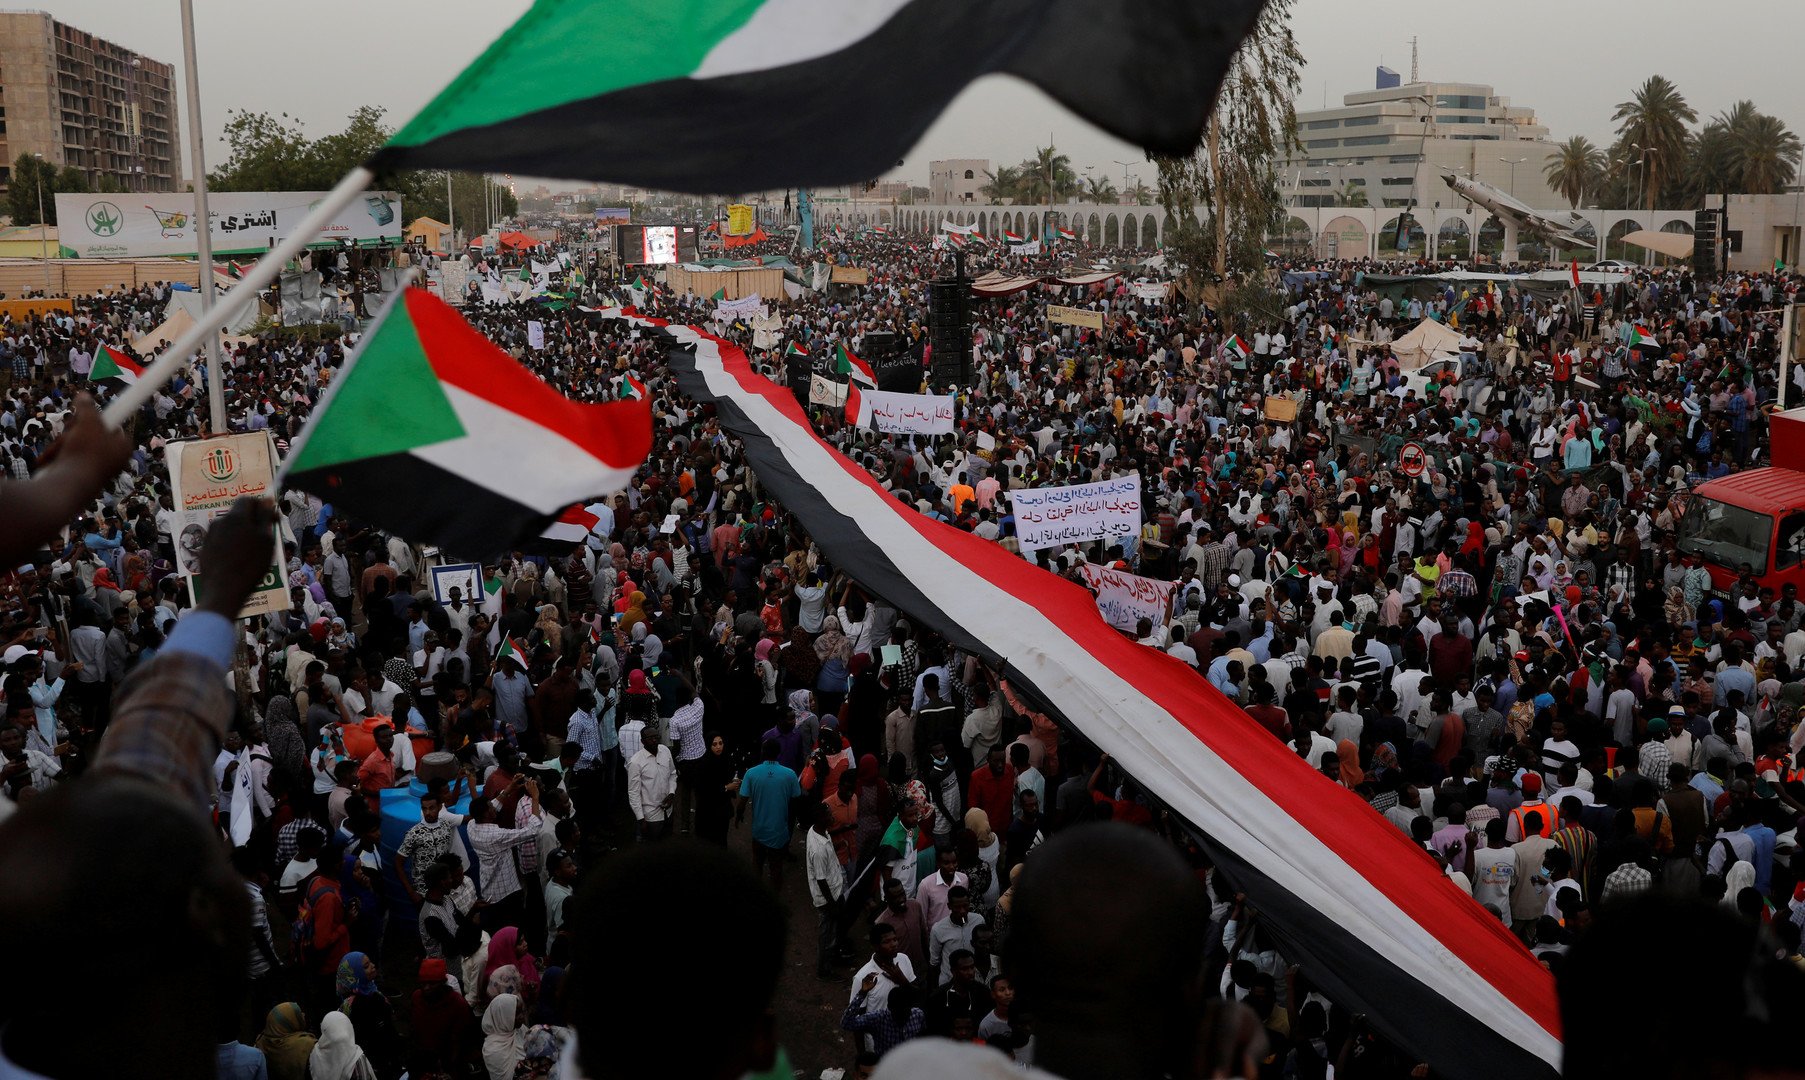 المجلس العسكري الانتقالي في السودان يجدد التزامه بتسليم الحكم إلى سلطة مدنية